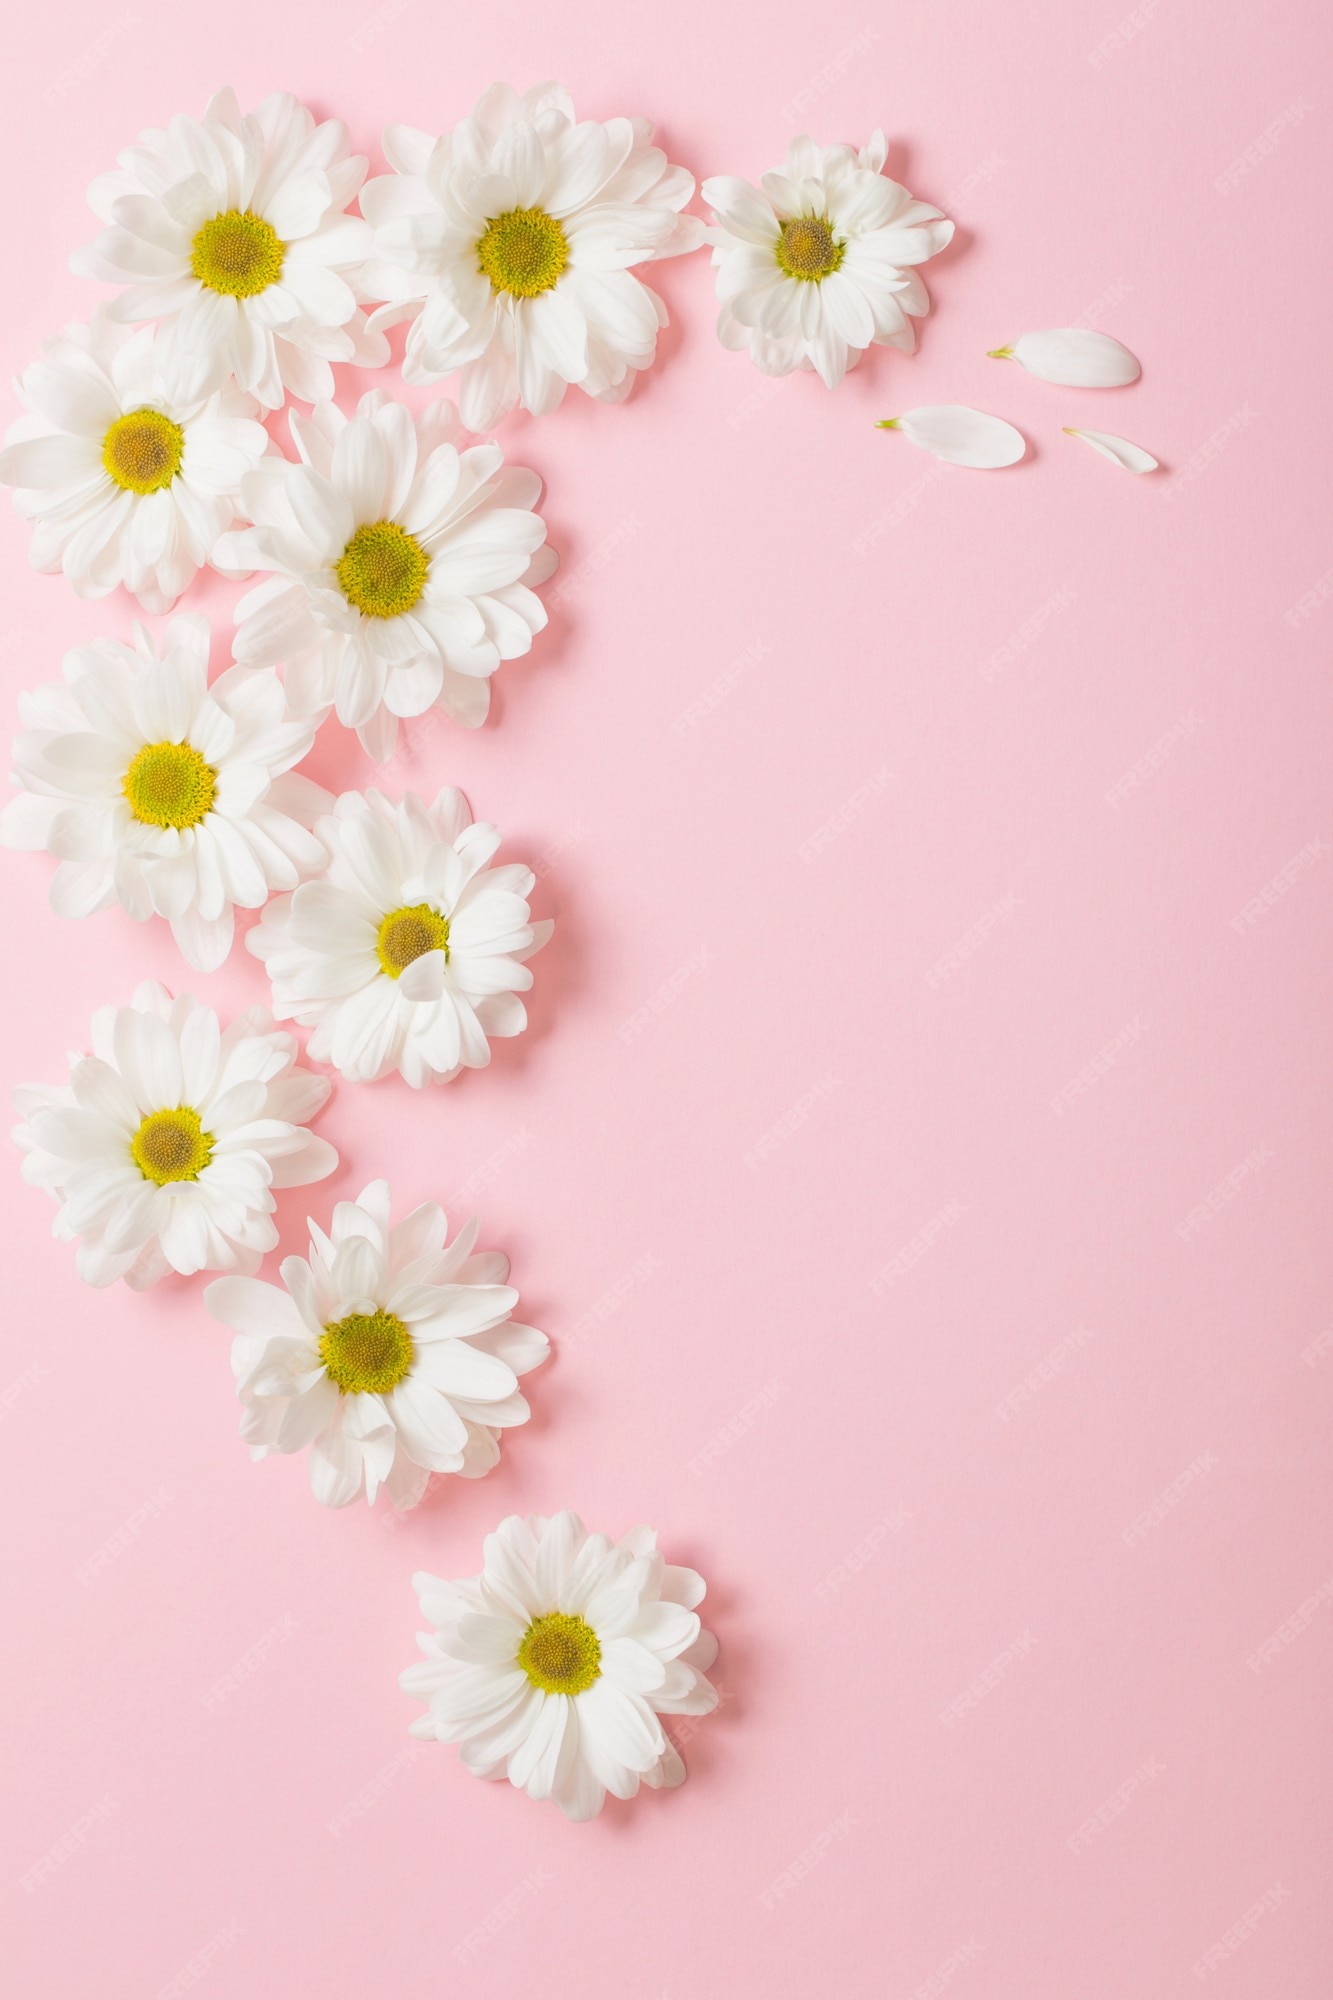 Hoa trắng nở rộ trên nền hồng nhạt sẽ khiến bạn liên tưởng đến mùa xuân, những ngày gió mát, nắng ấm và cảnh đẹp tuyệt vời. Ảnh này sẽ giúp bạn thư giãn và cảm nhận được những thứ không gian xanh biếc tuyệt vời.